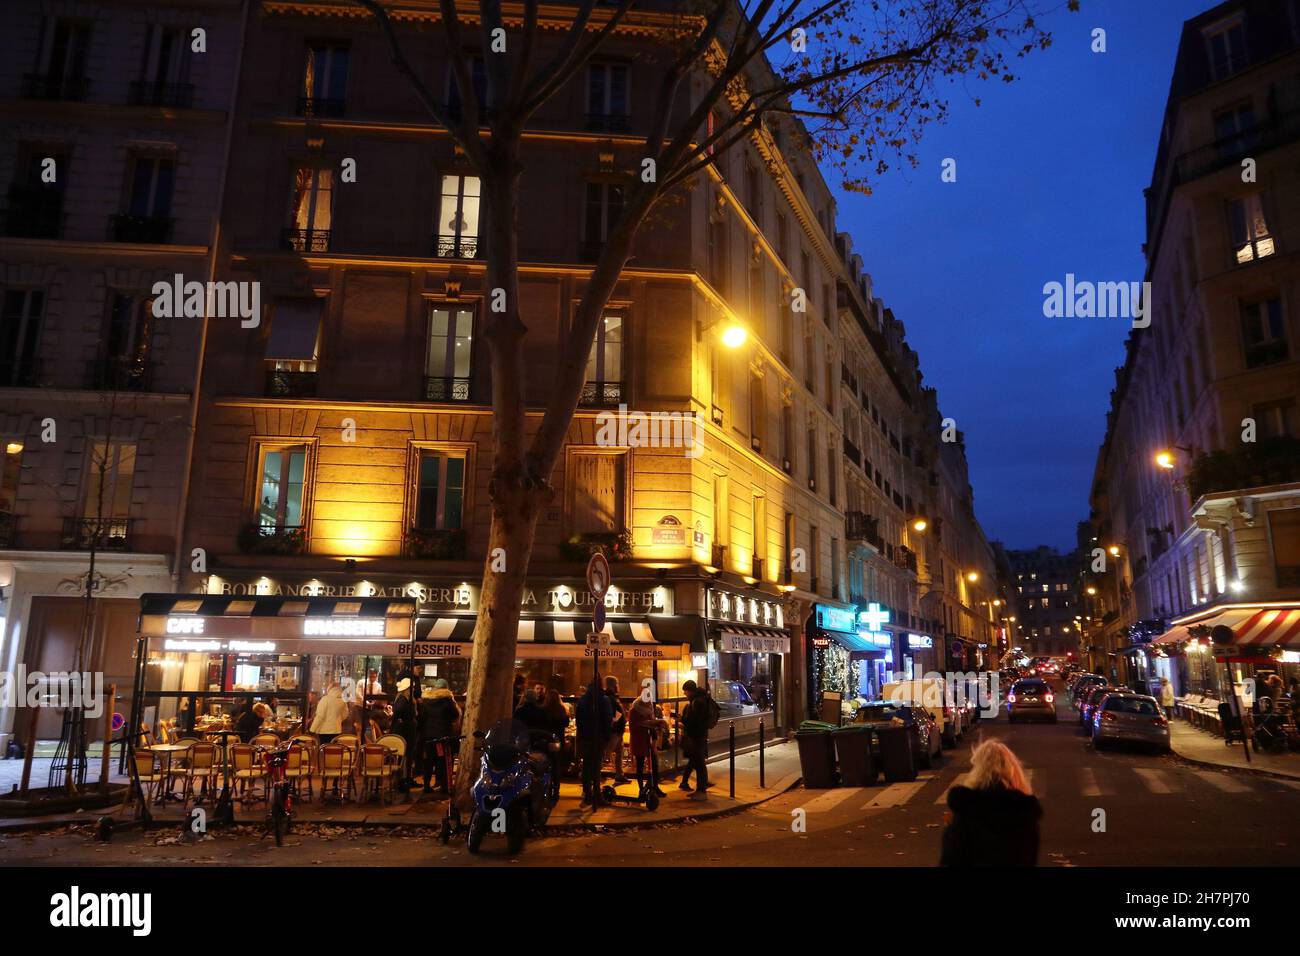 PARIGI, FRANCIA - 10 DICEMBRE 2019: La gente visita locale bistrot nel settimo arrondissement di Parigi, Francia. Parigi è la città più grande della Francia, con 12.5 km Foto Stock